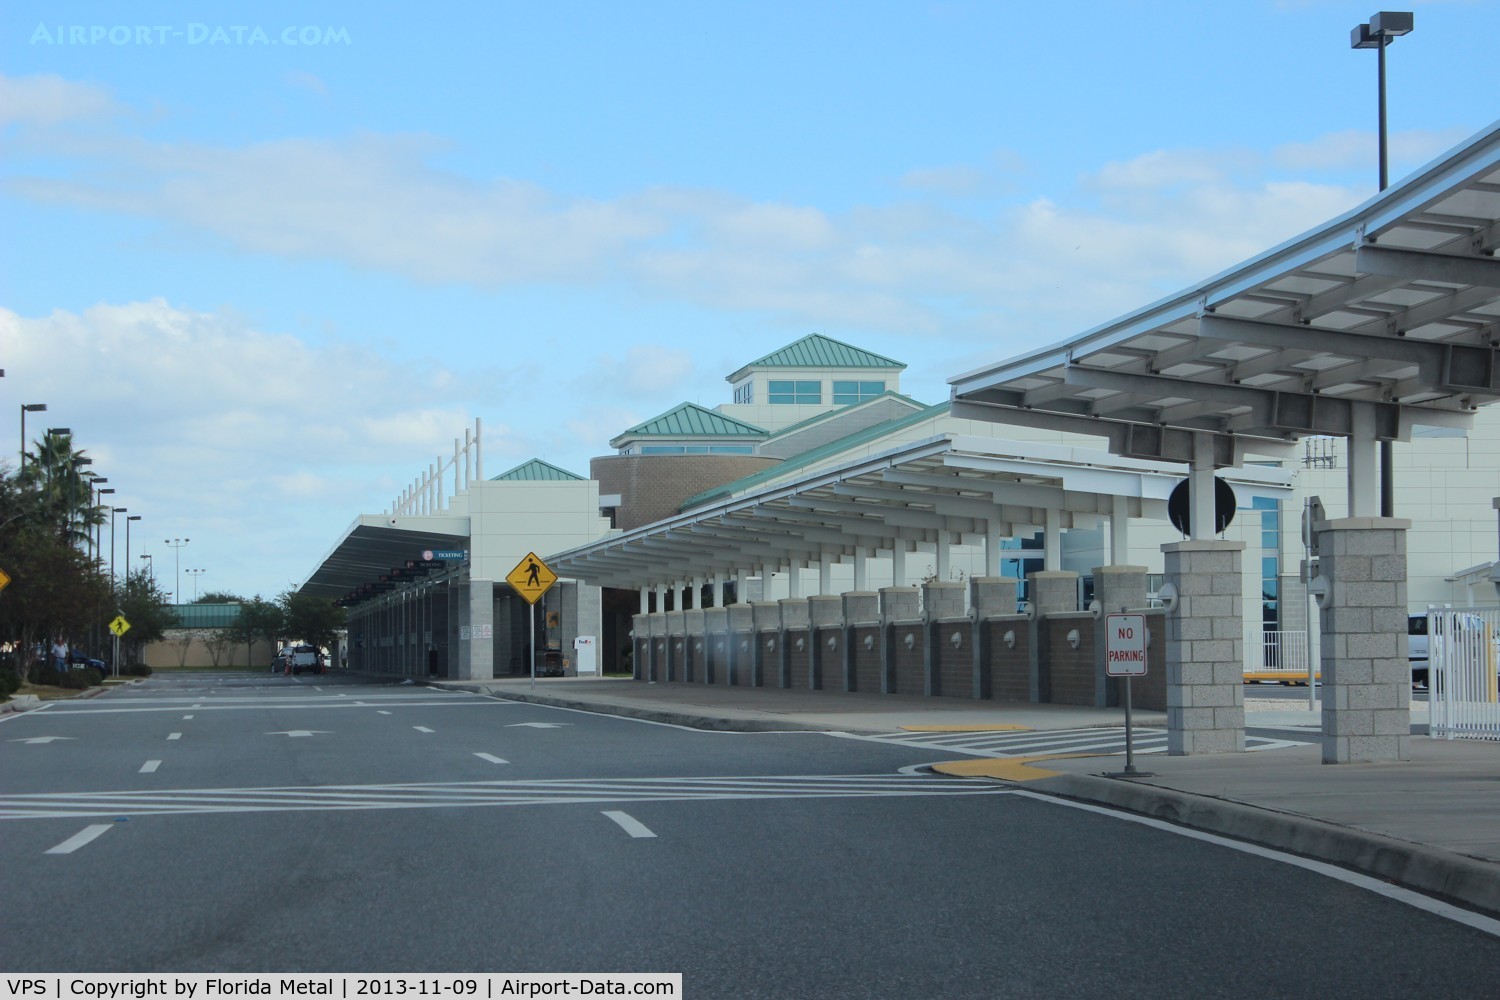 Eglin Afb Airport (VPS) - Eglin AFB/Valpraiso/Ft Walton Beach terminal